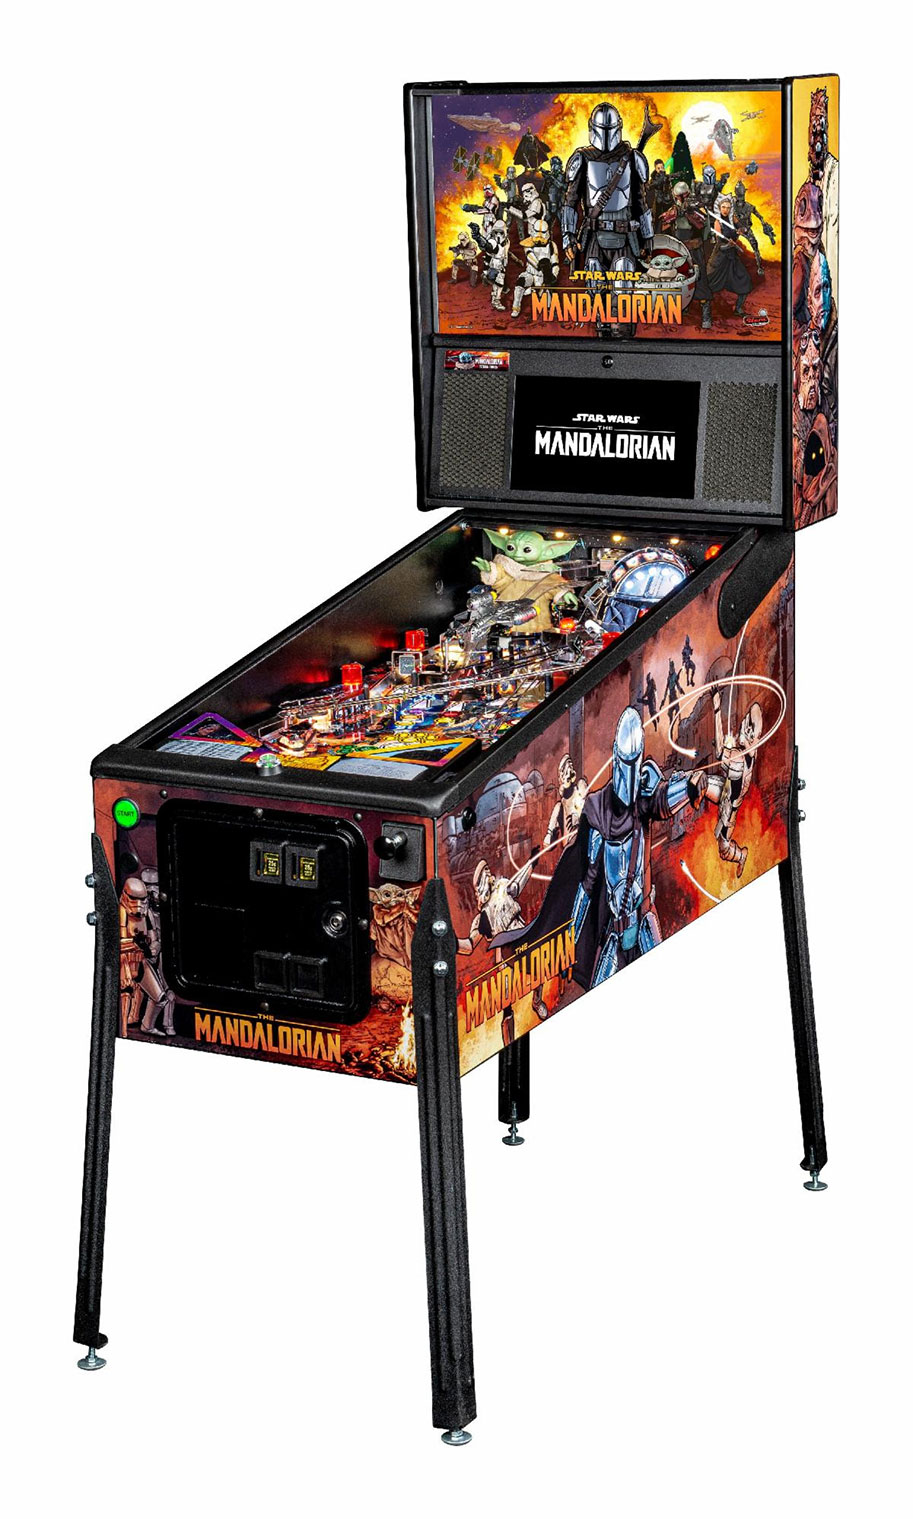 The Mandalorian, Stern Pinball, pinball machine, limited edition